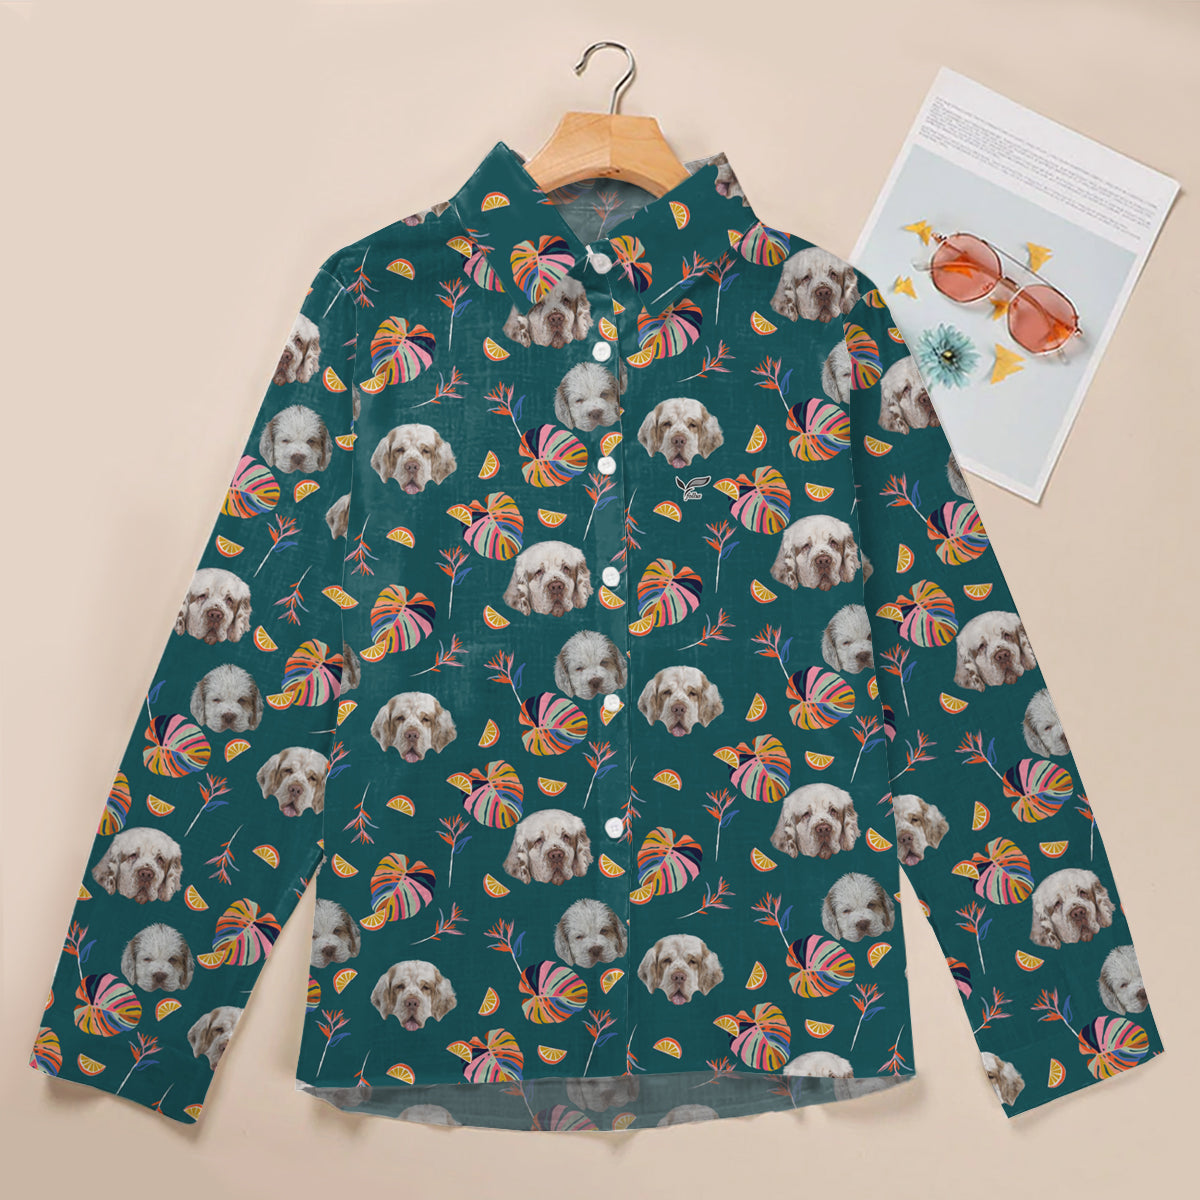 Summer Time - Clumber Spaniel Women Shirt